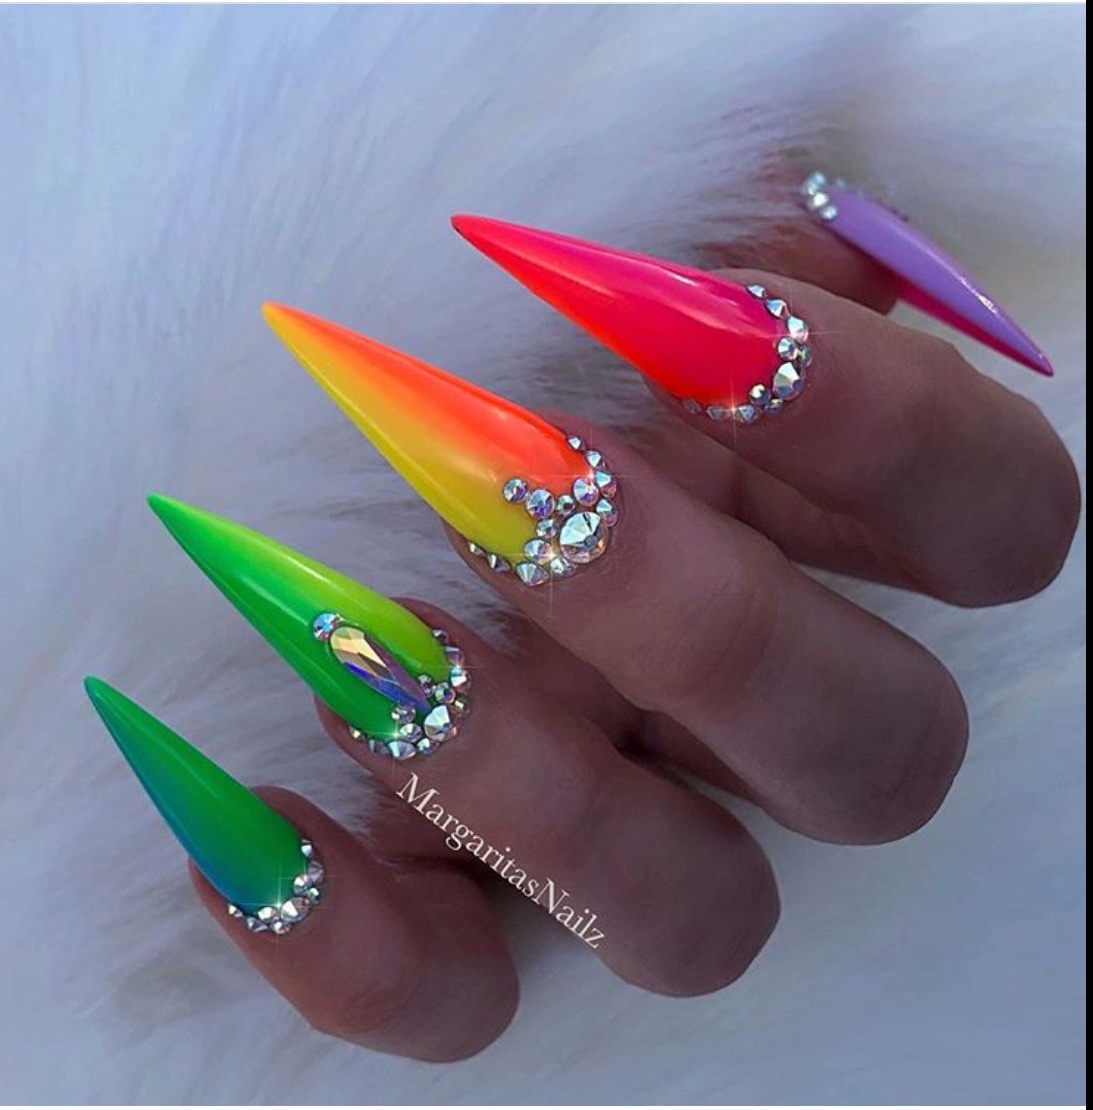 multi-colored nails